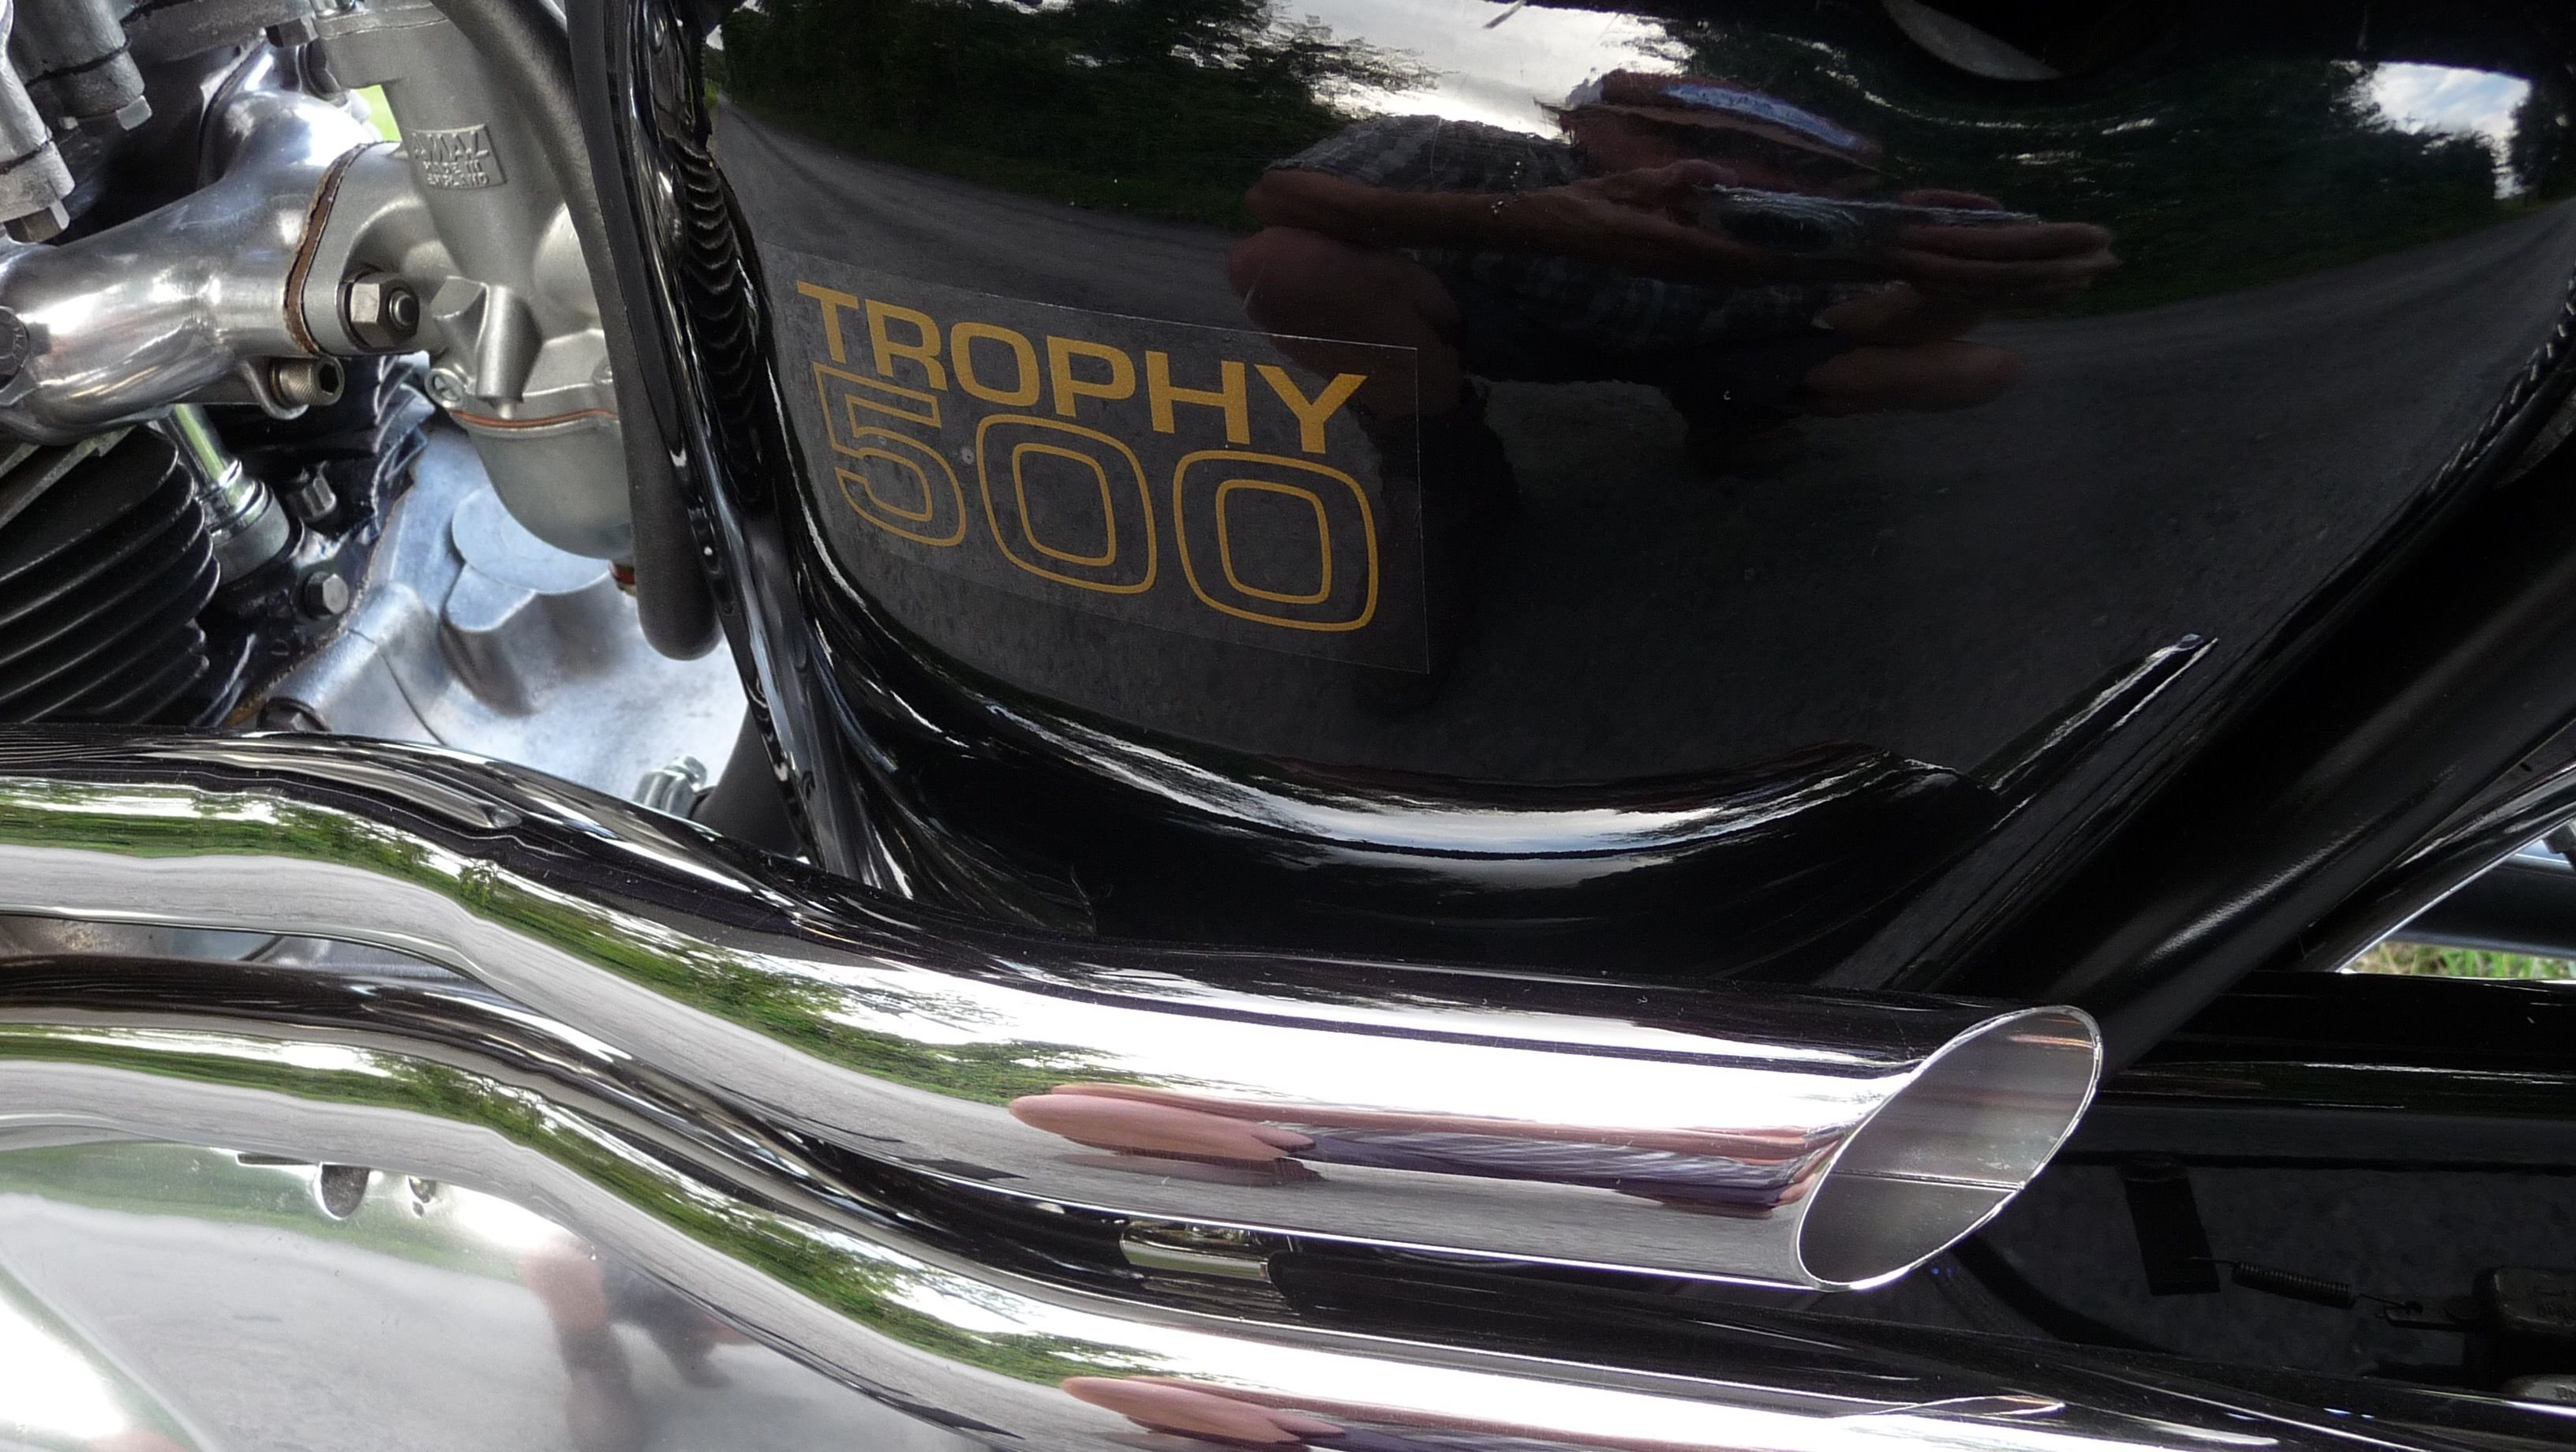 1970 Triumph Trophy 500 T100 Competition